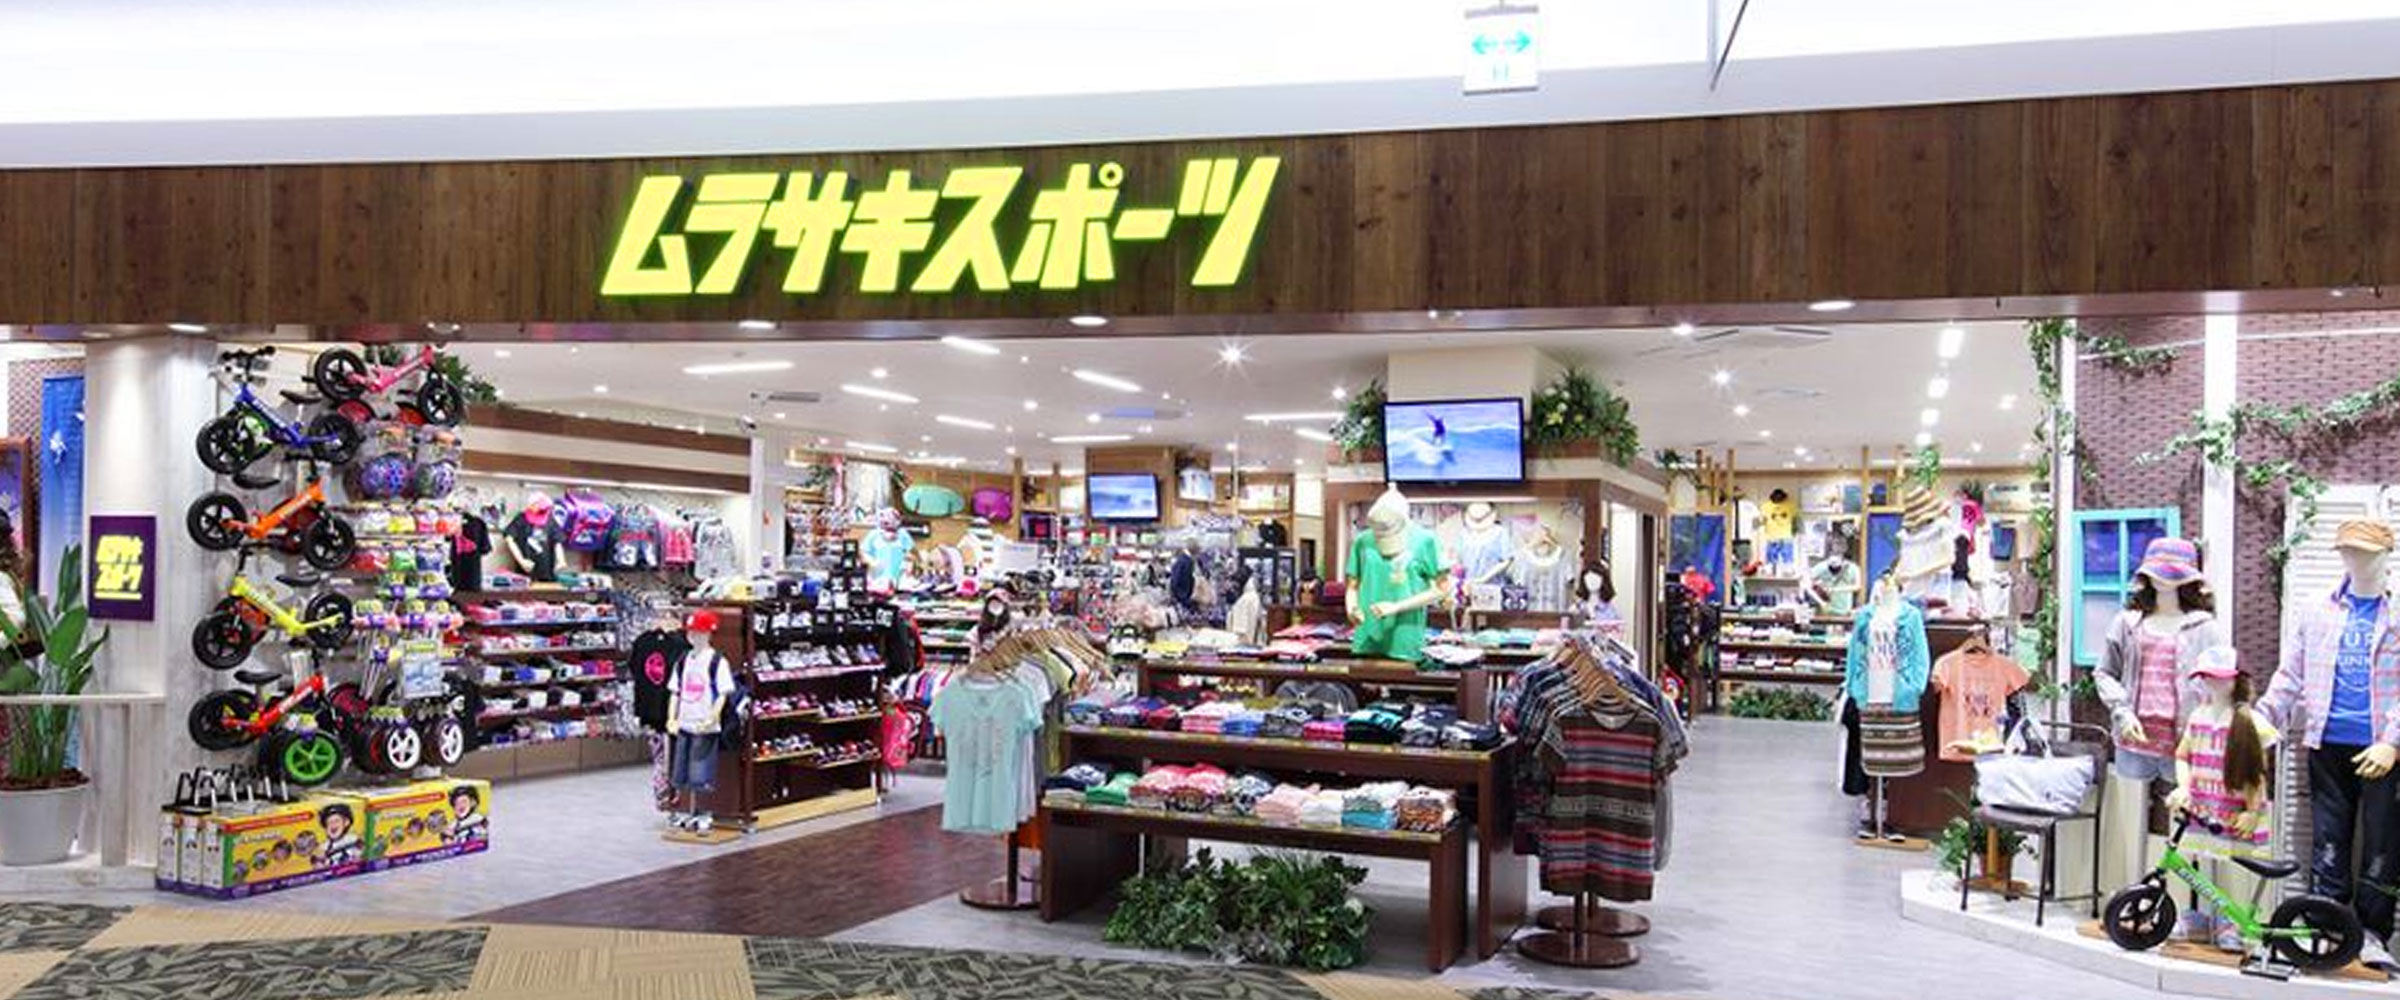 ｲｵﾝﾓｰﾙ久御山 の店舗画像